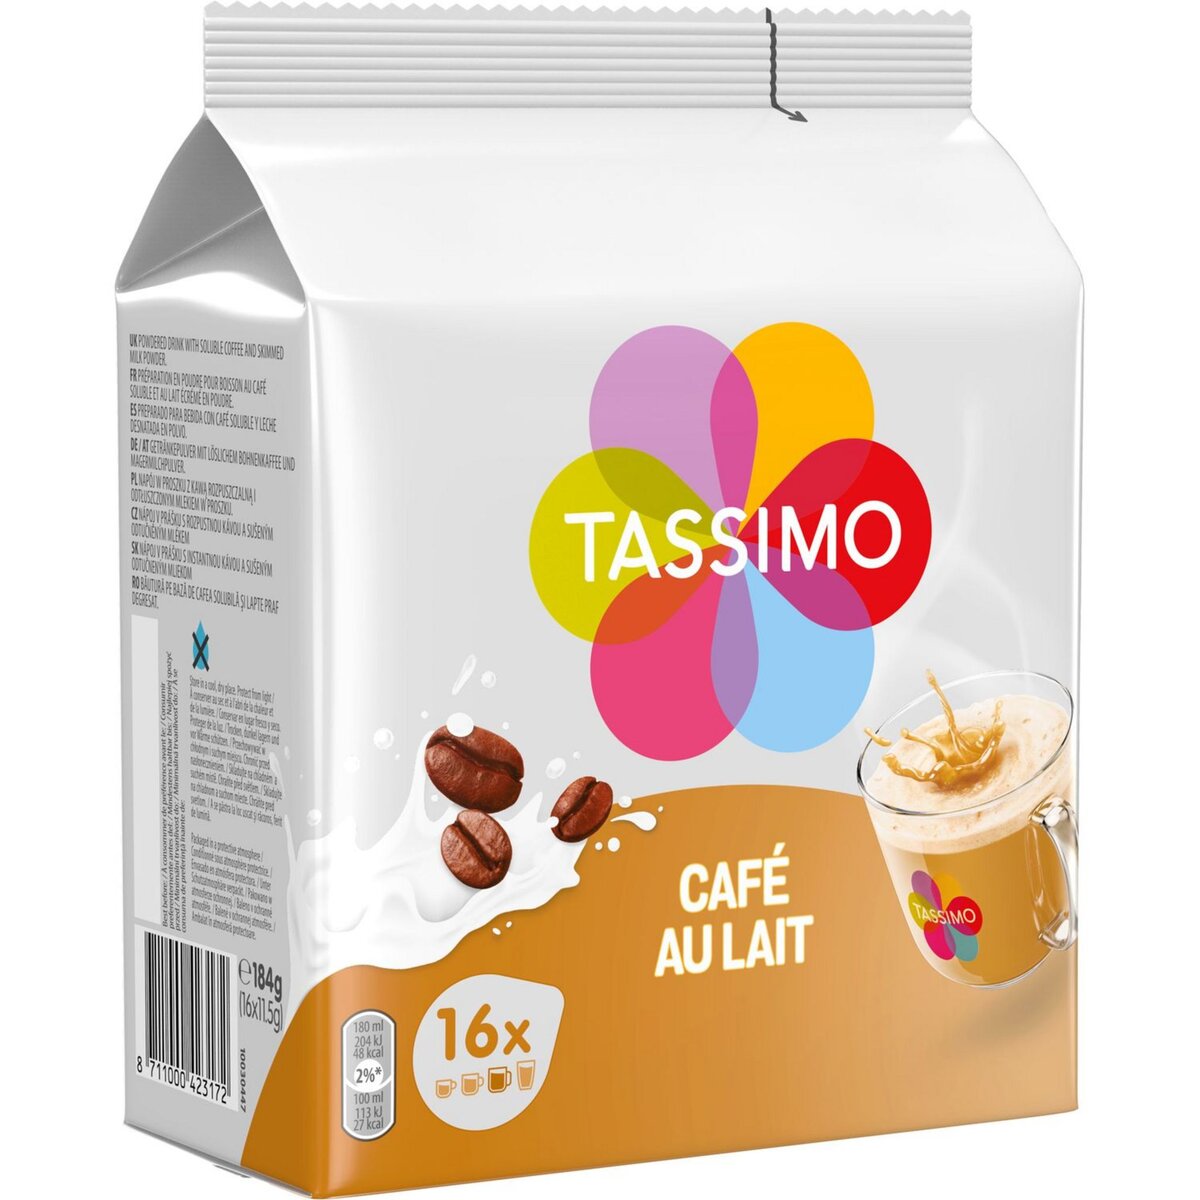 Café au lait - Tassimo